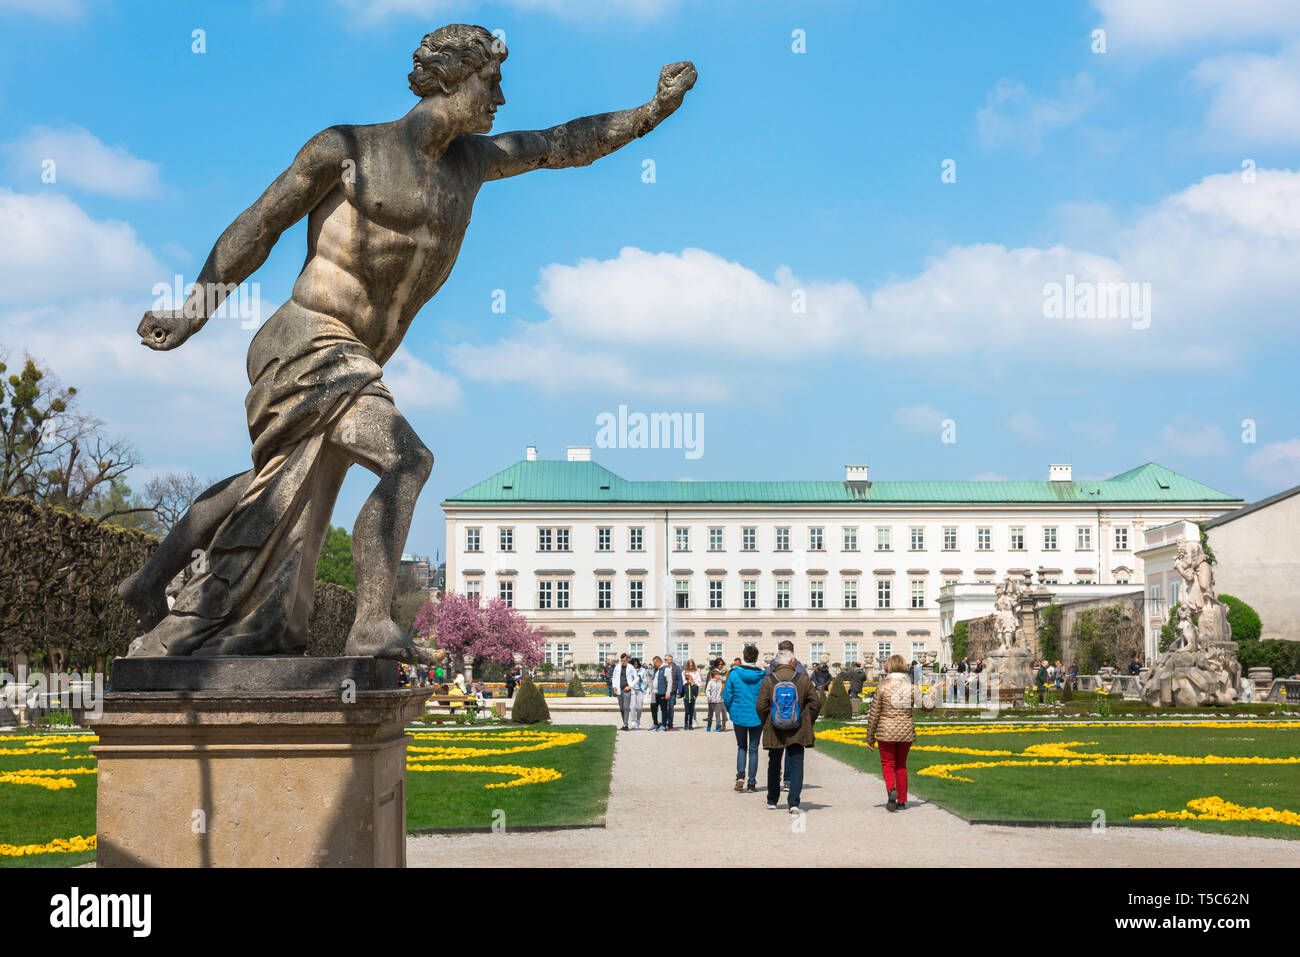 Salzburg Österreich, Blick auf die Touristen durch die Gärten von Schloss Mirabell Bummeln auf einen späten Frühling Morgen in der Stadt Salzburg, Österreich. Stockfoto